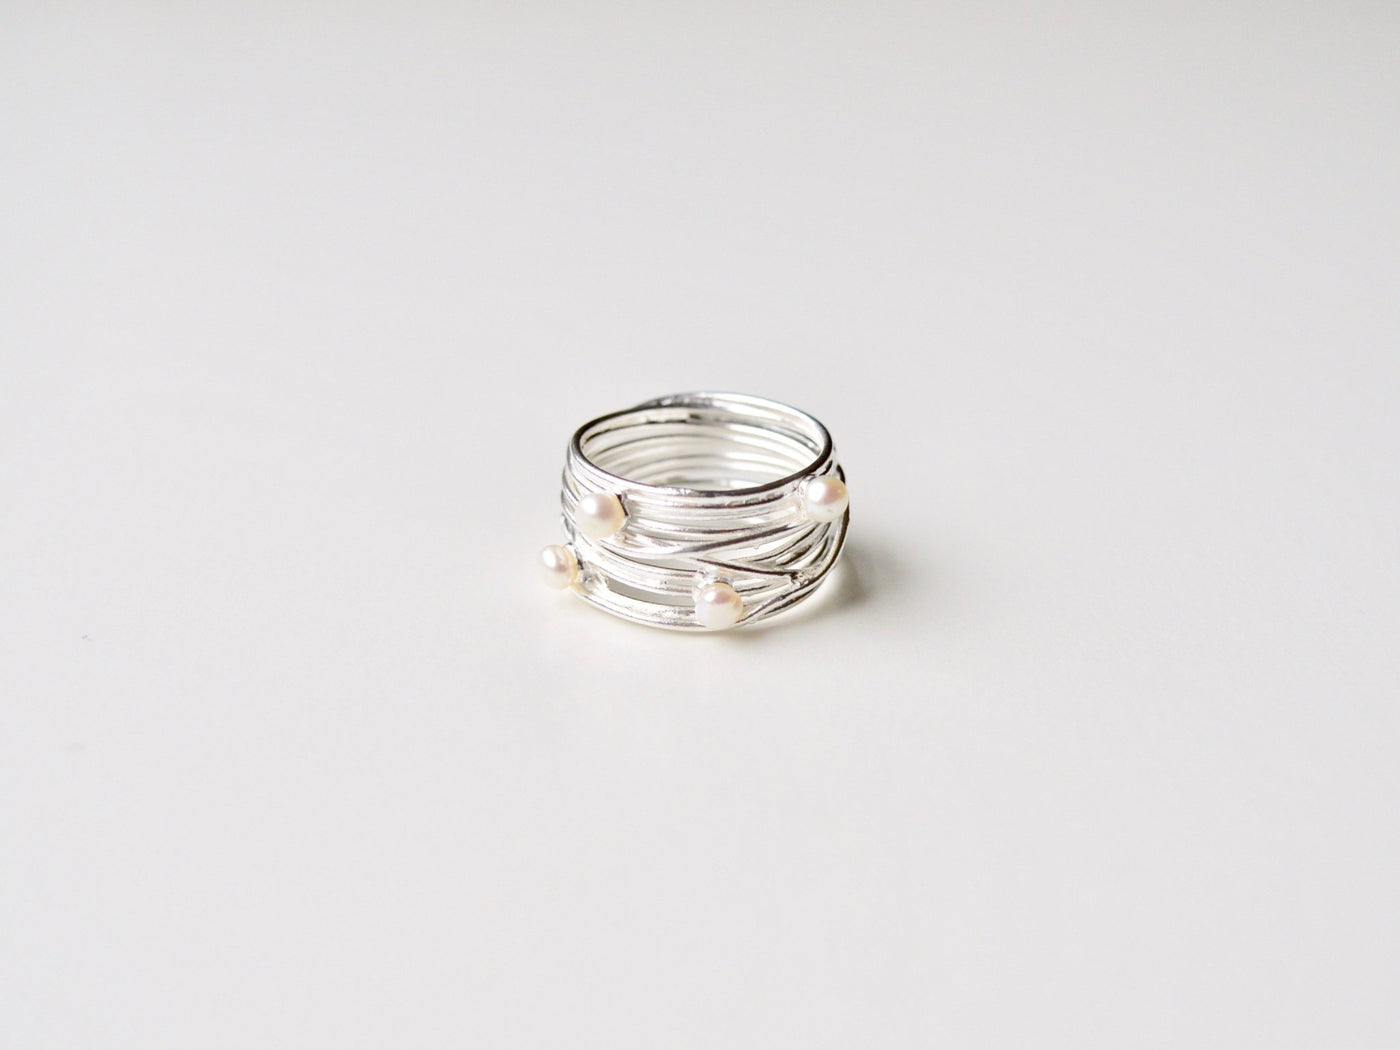 Wire & Pearls: Statement Perlen Ring silber - Mia&Martha by Katja Schmalen